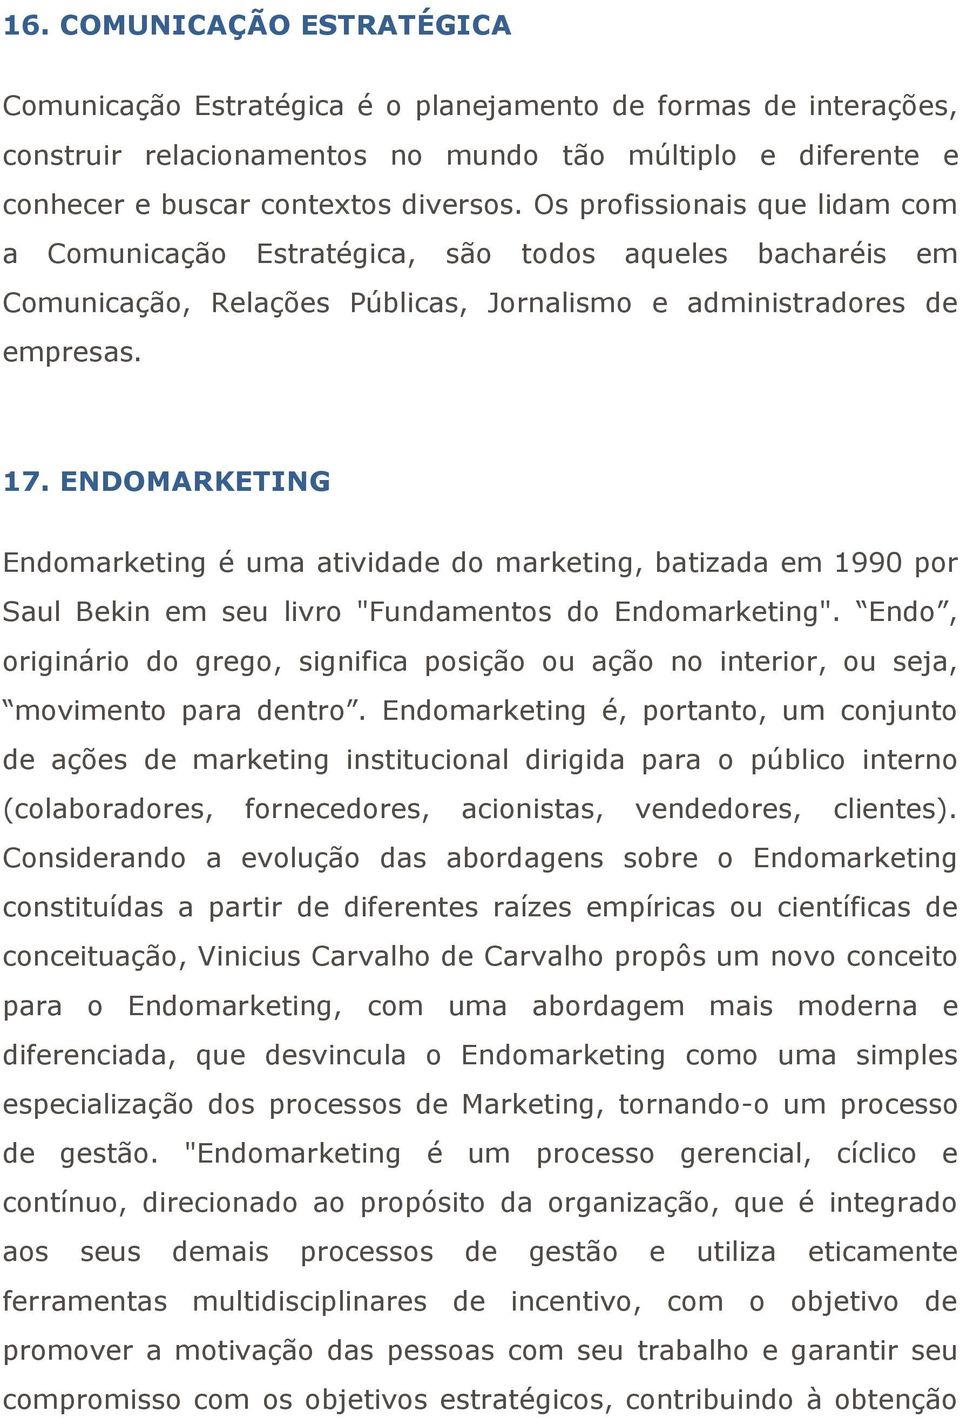 ENDOMARKETING Endomarketing é uma atividade do marketing, batizada em 1990 por Saul Bekin em seu livro "Fundamentos do Endomarketing".